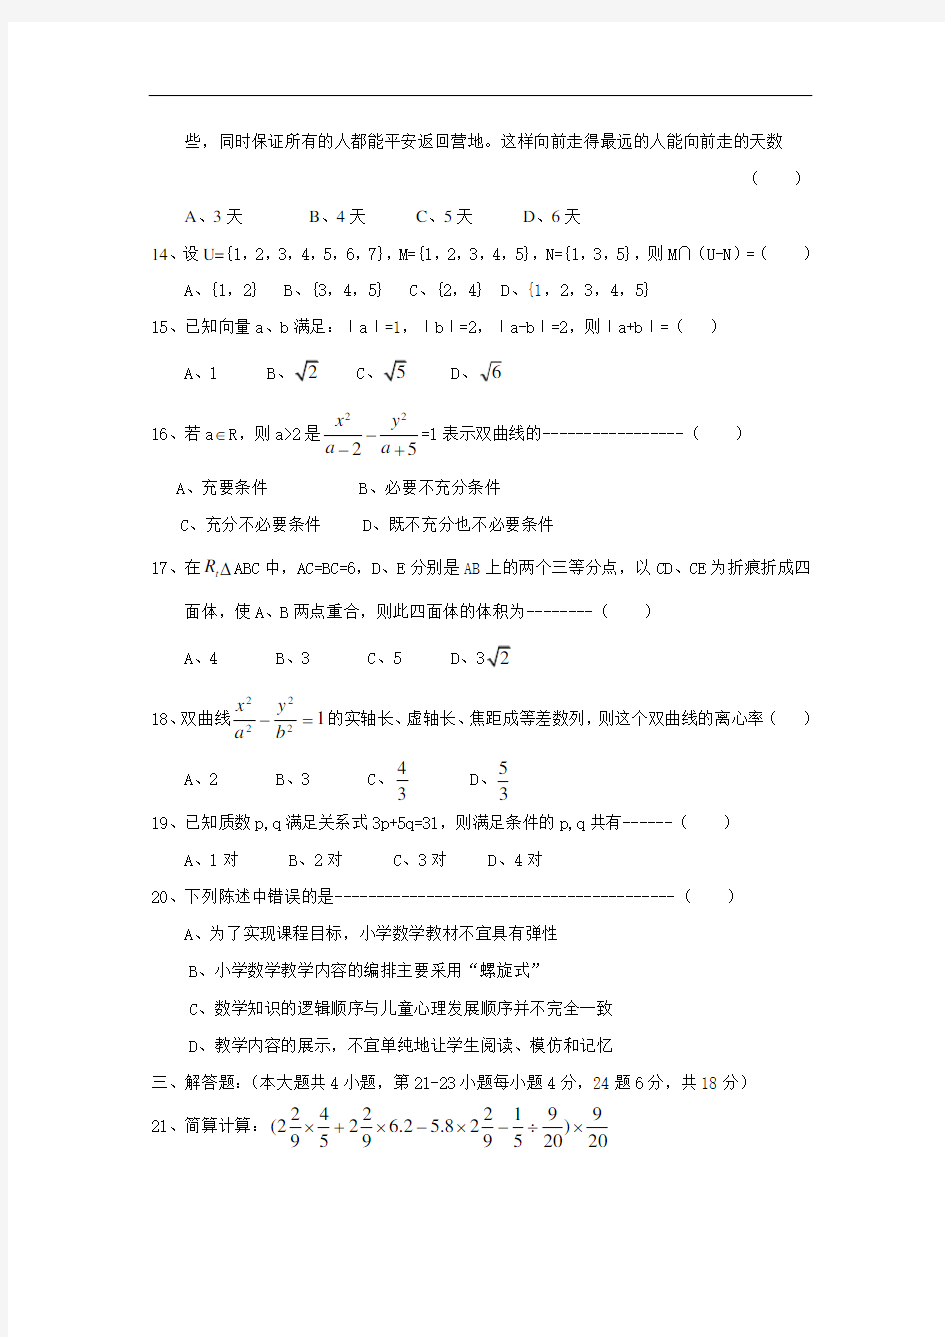 19年浙江省小学数学教师招聘考试试题